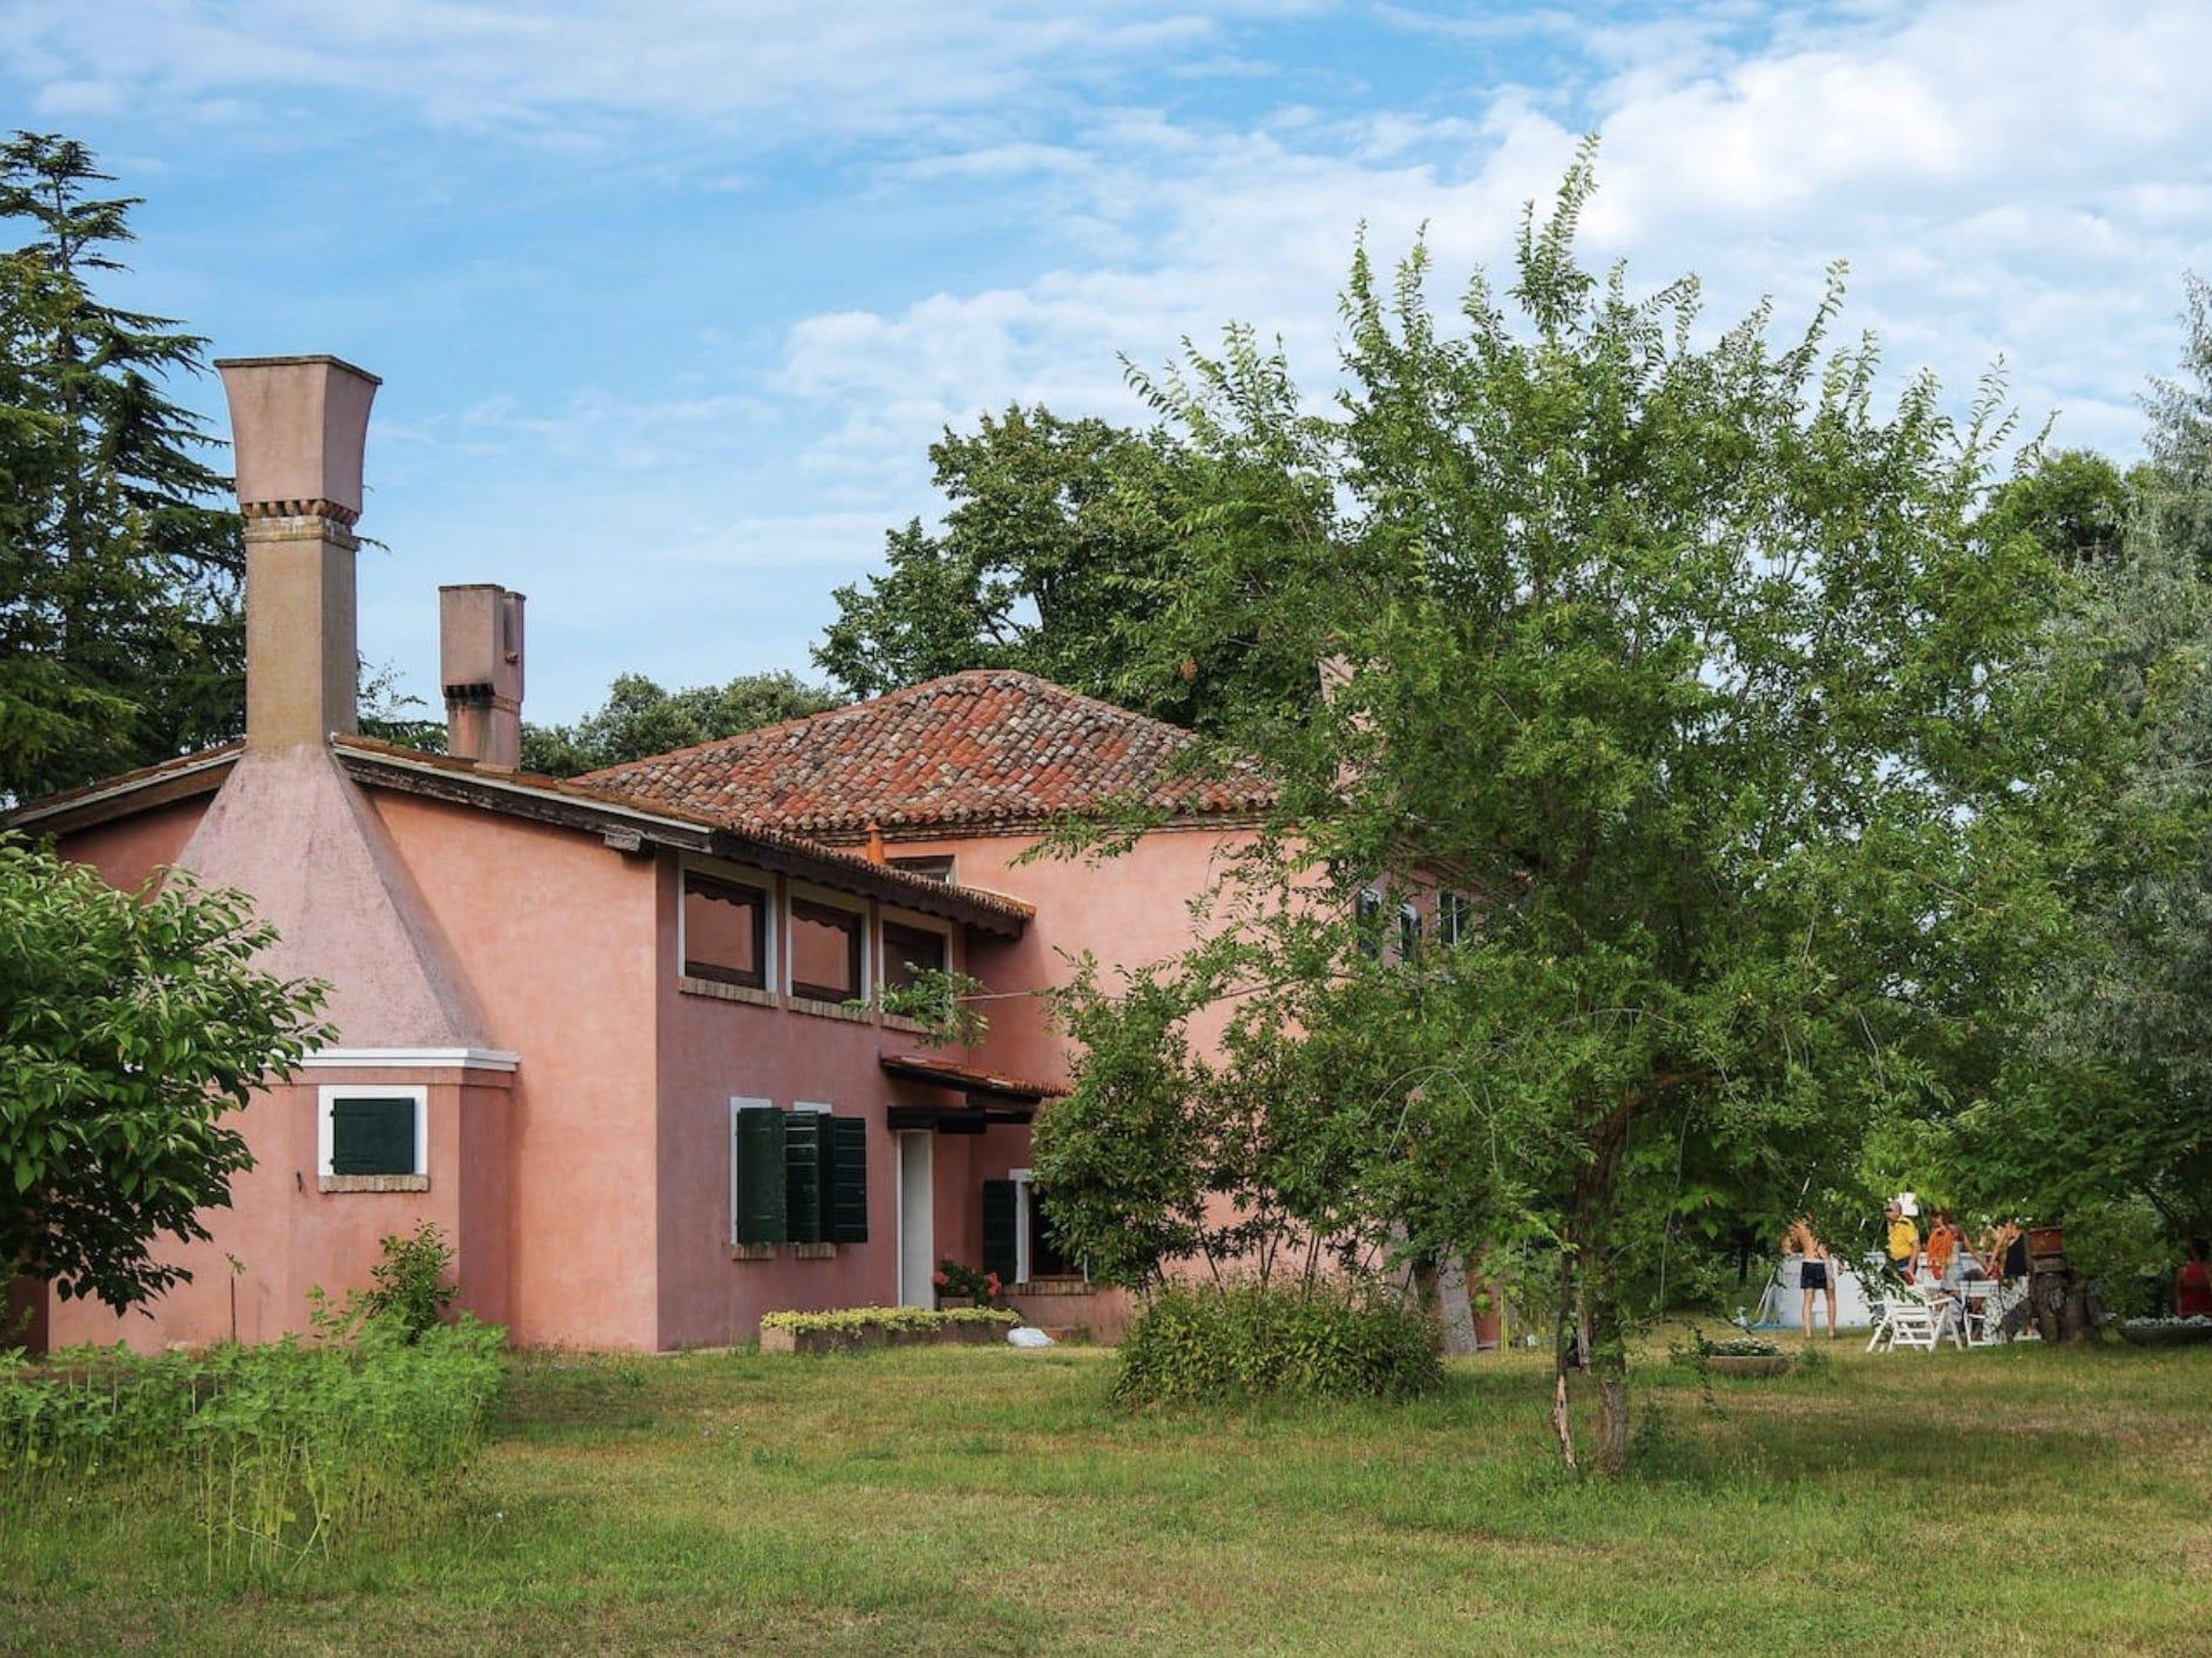 La granja de color rosa brillante ha estado en la familia de Sarzetto durante generaciones.